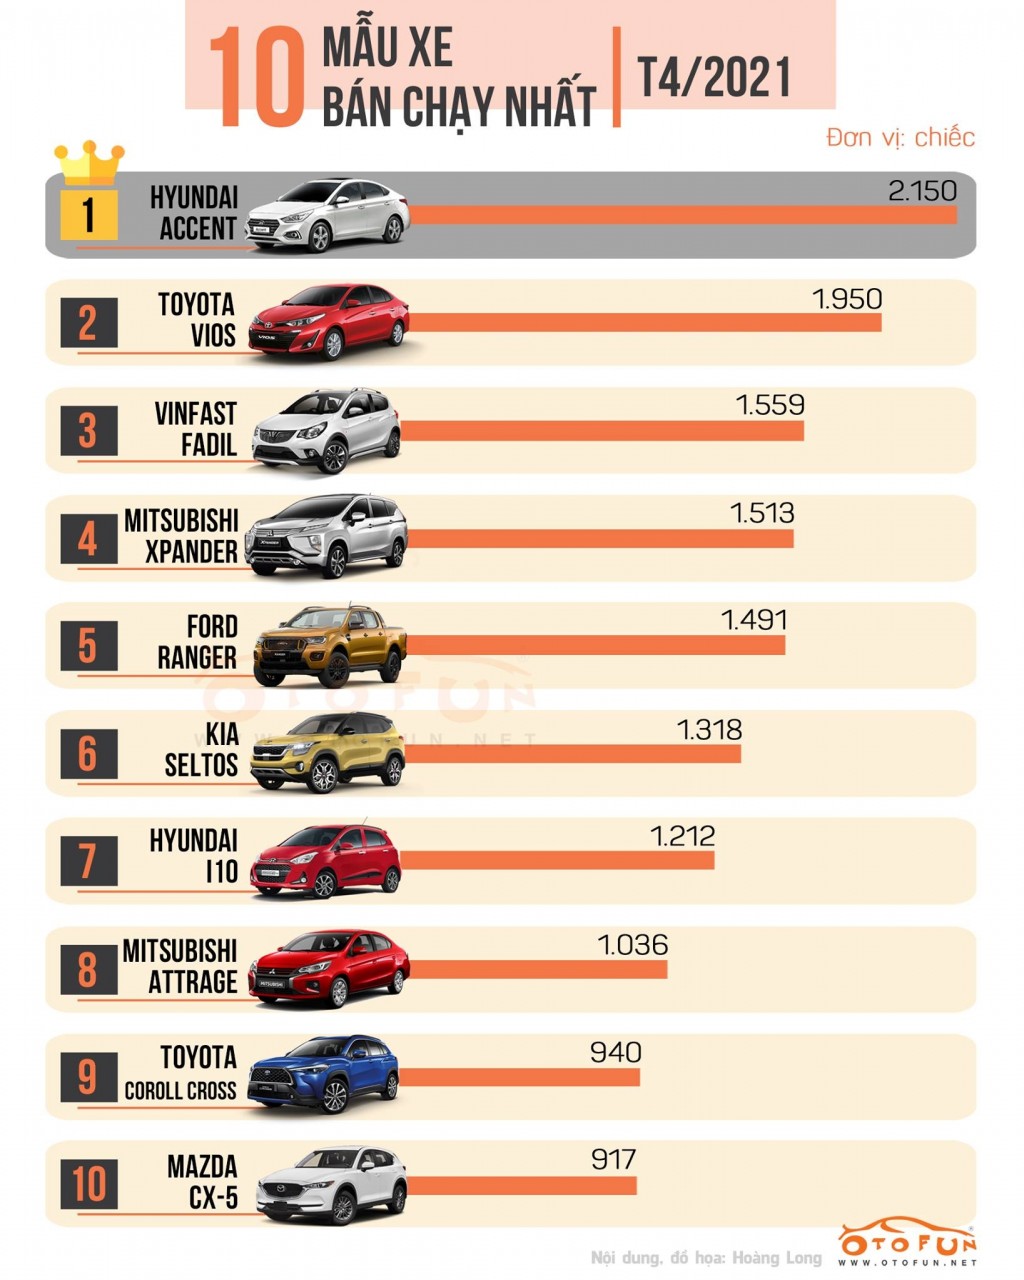 [Infographic] Top 10 xe bán chạy nhất tháng 4/2021